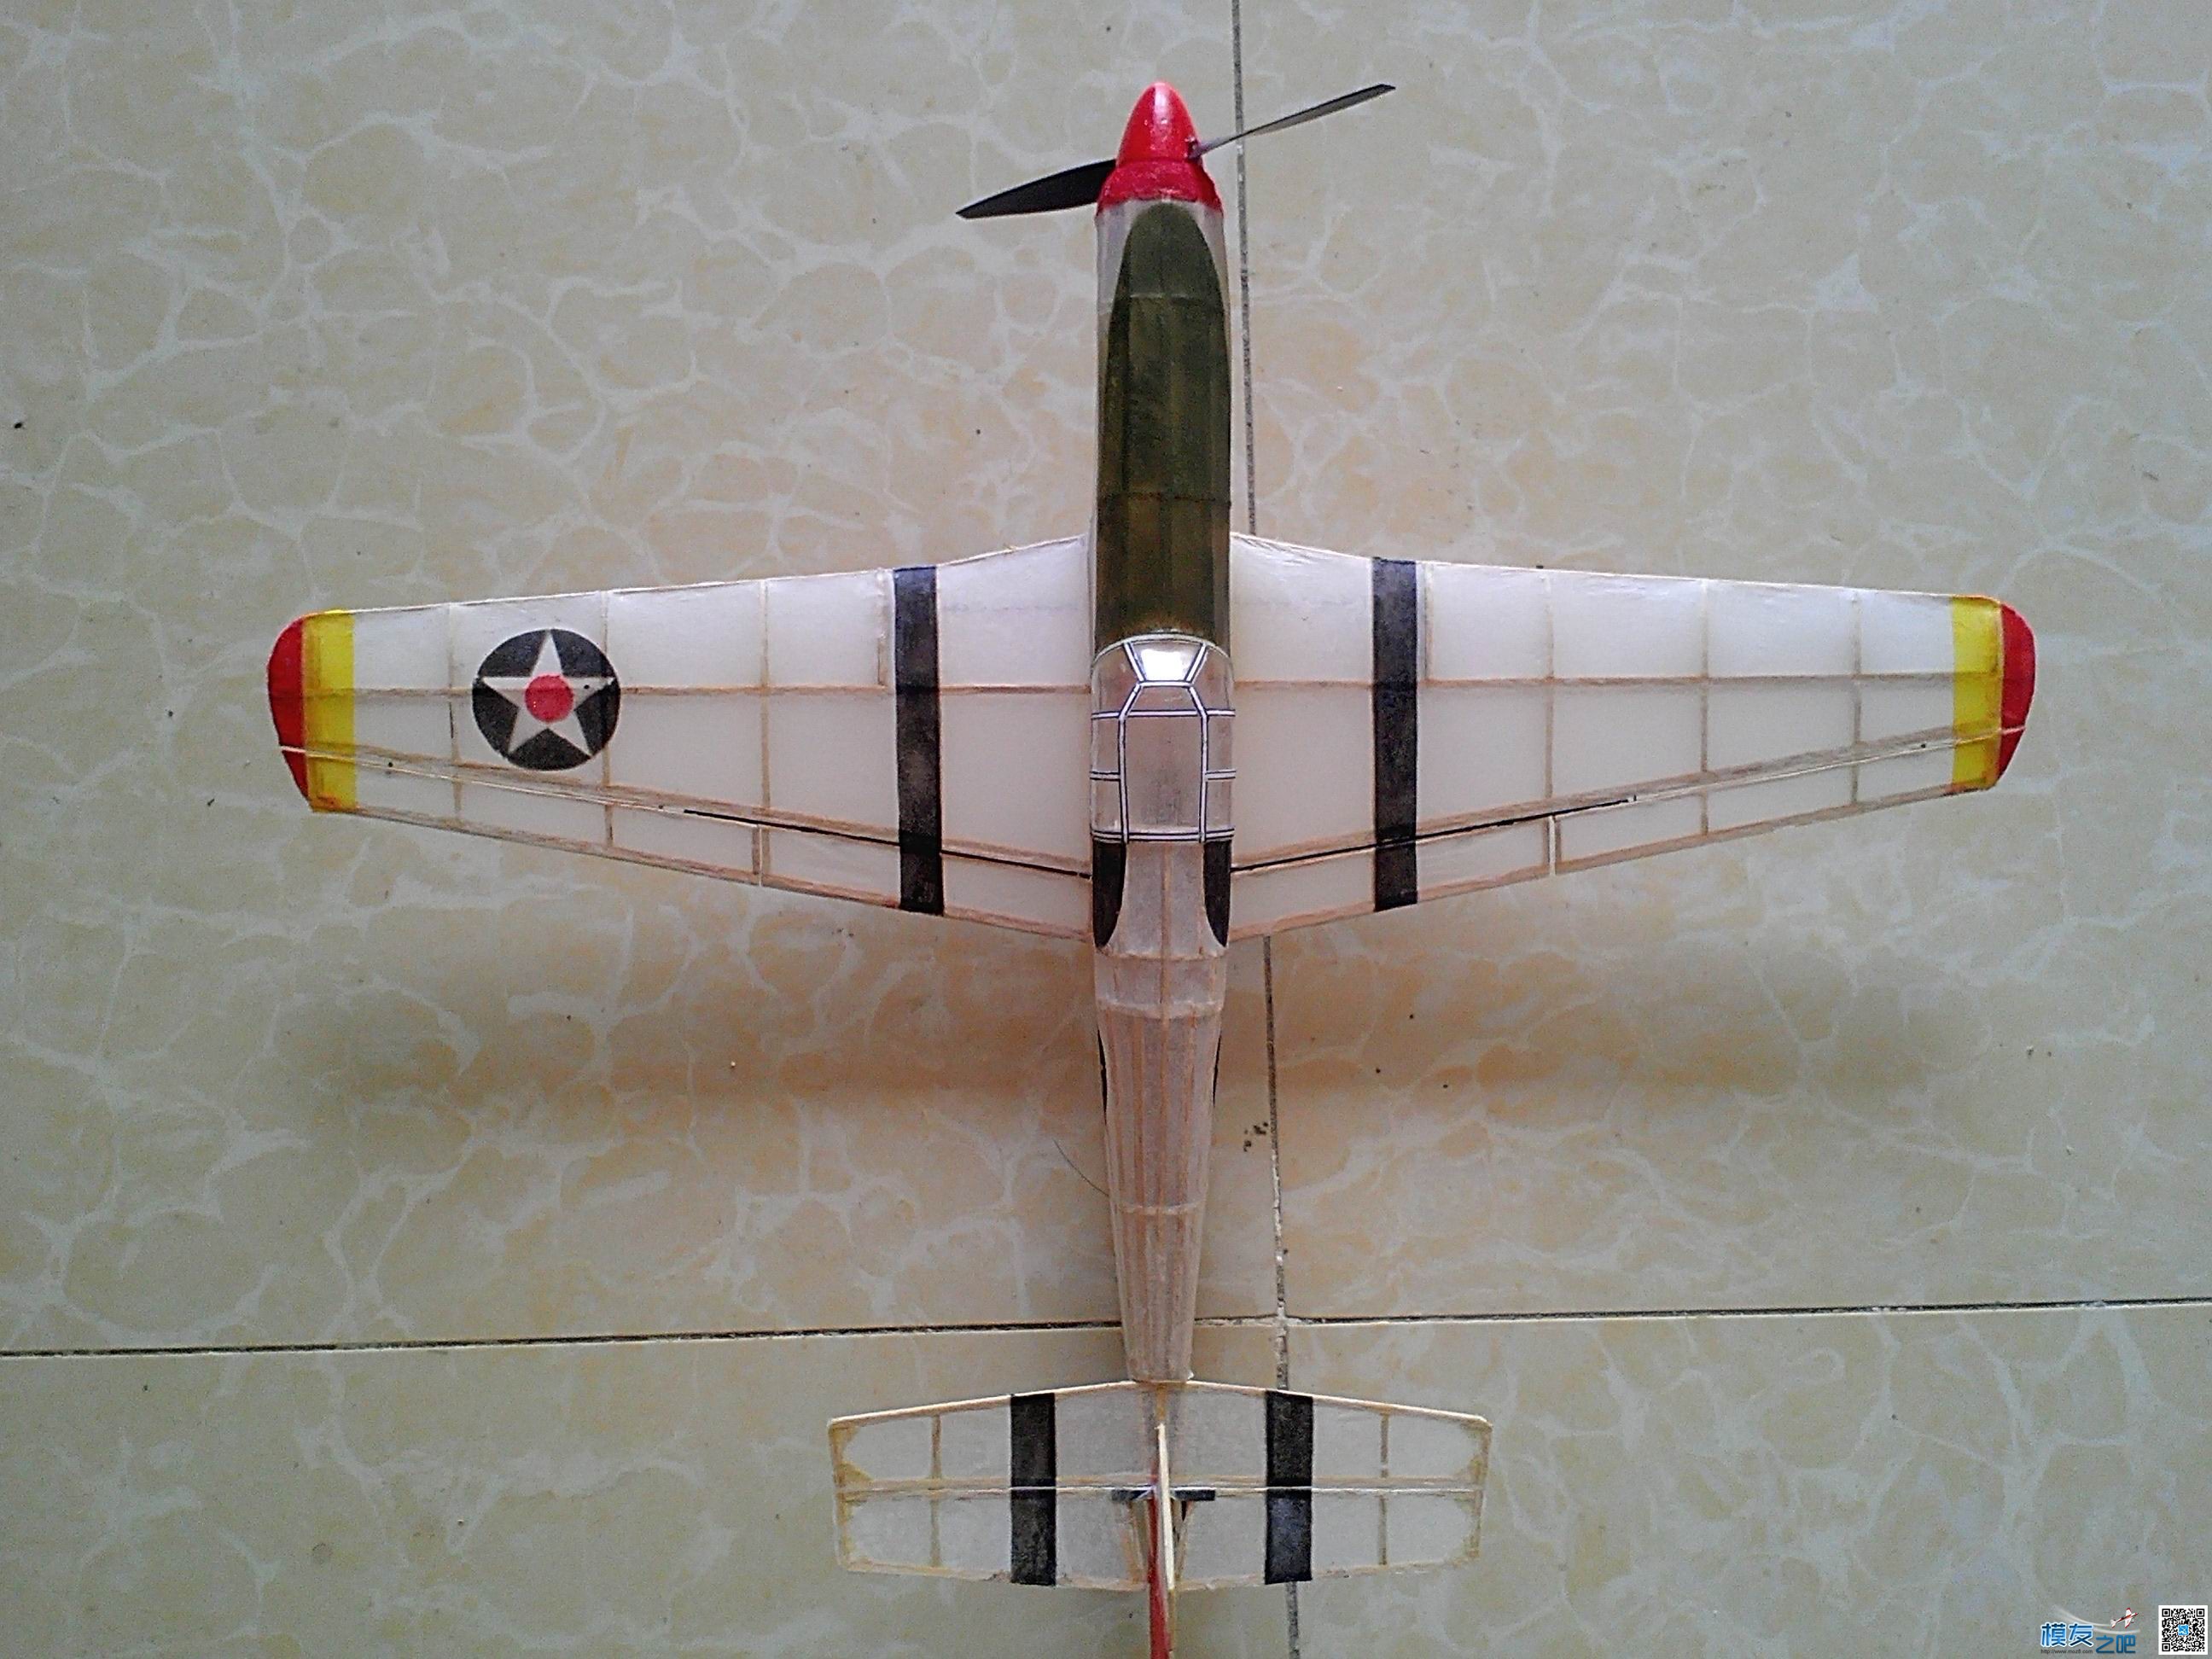 迷你轻木机野马P51a 固定翼,舵机,图纸,接收机 作者:飞翔的橡皮筋 1337 